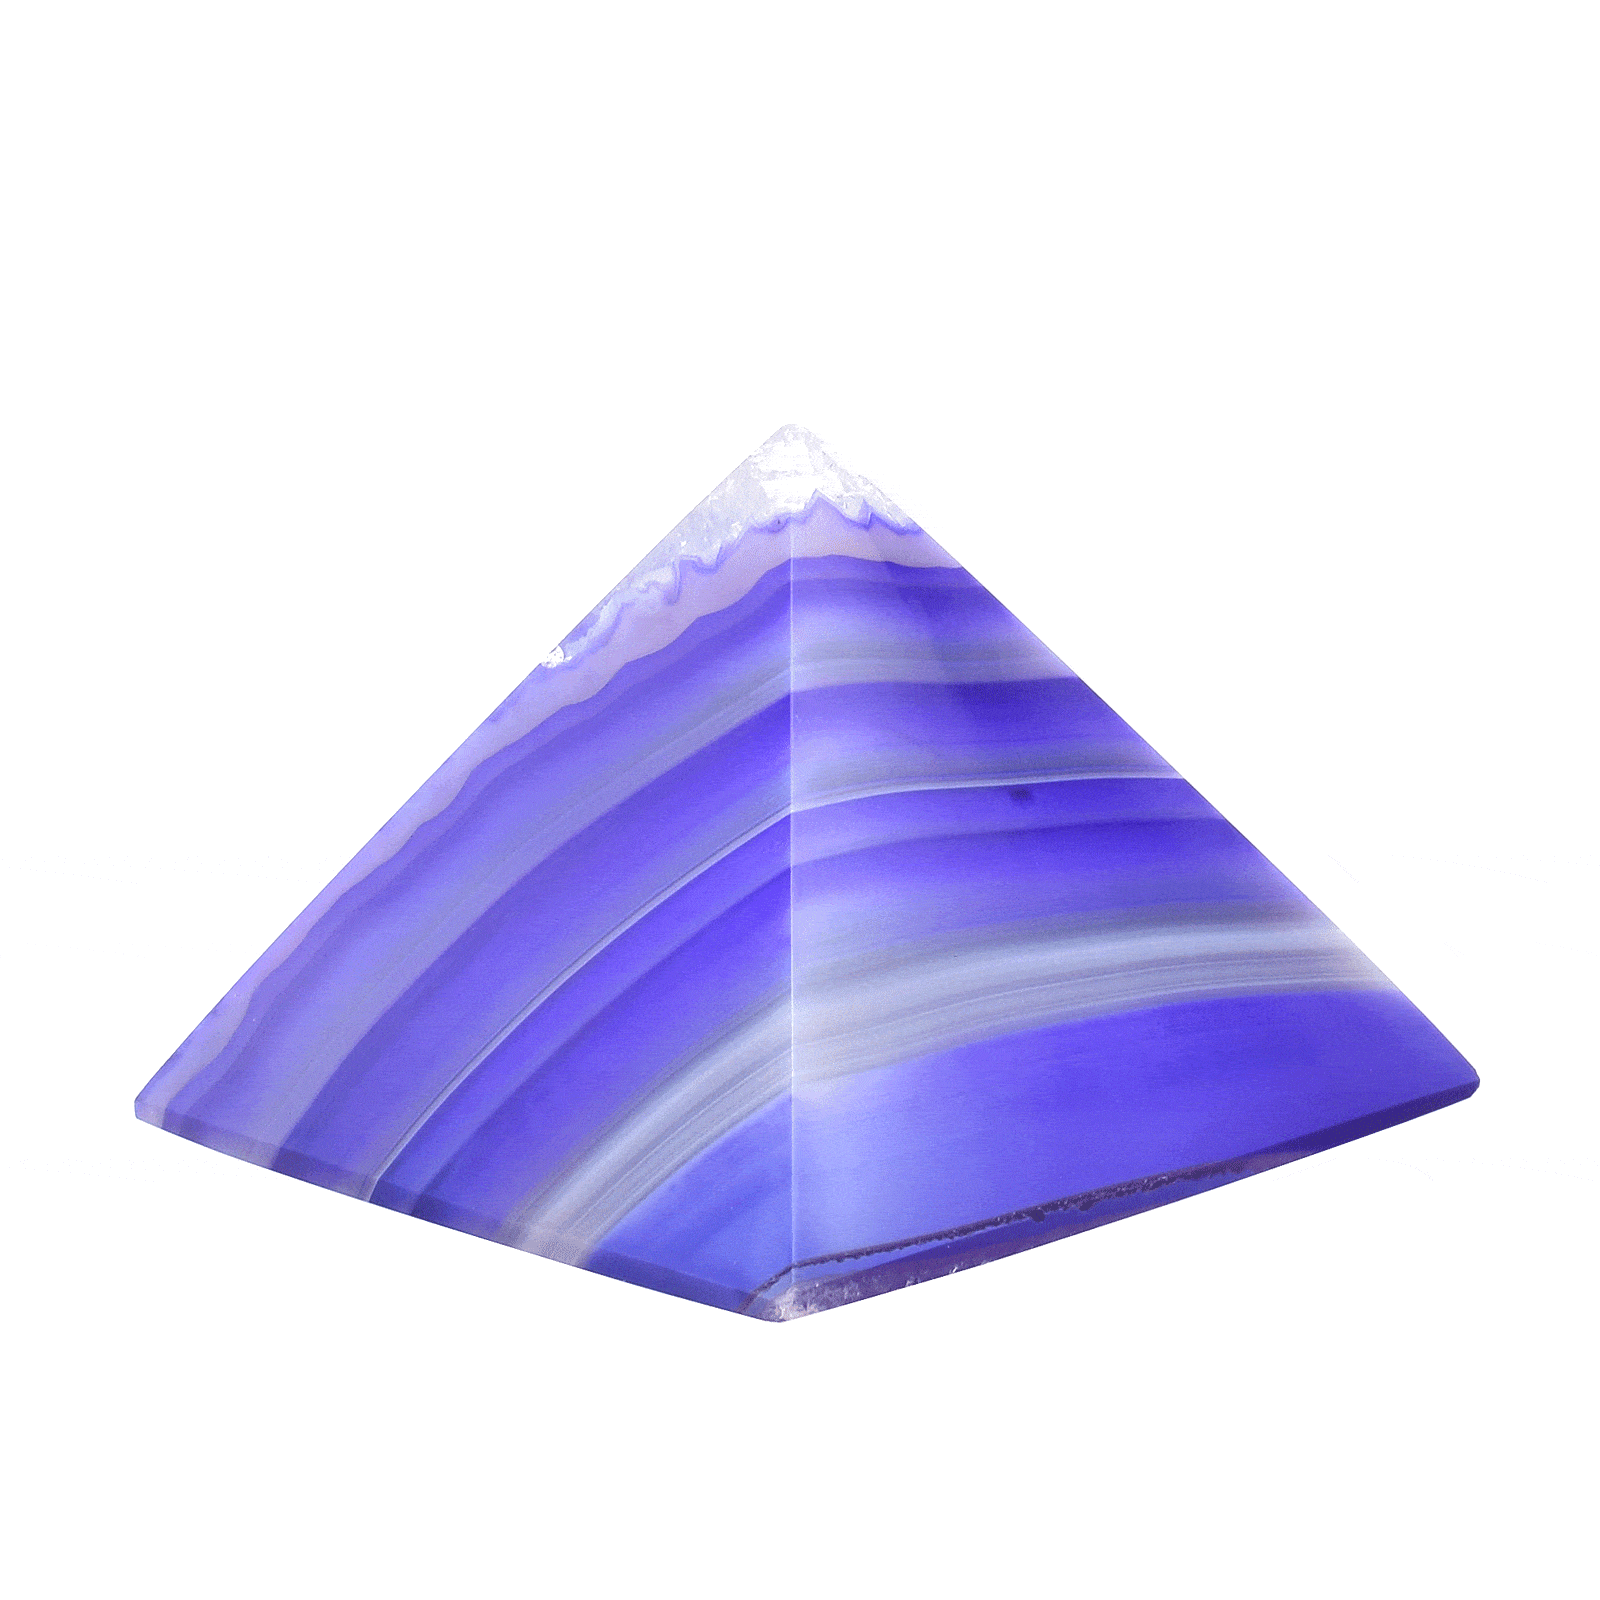 Πυραμίδα από φυσική πέτρα Αχάτη μωβ χρώματος, ύψους 4cm. Αγοράστε online shop.